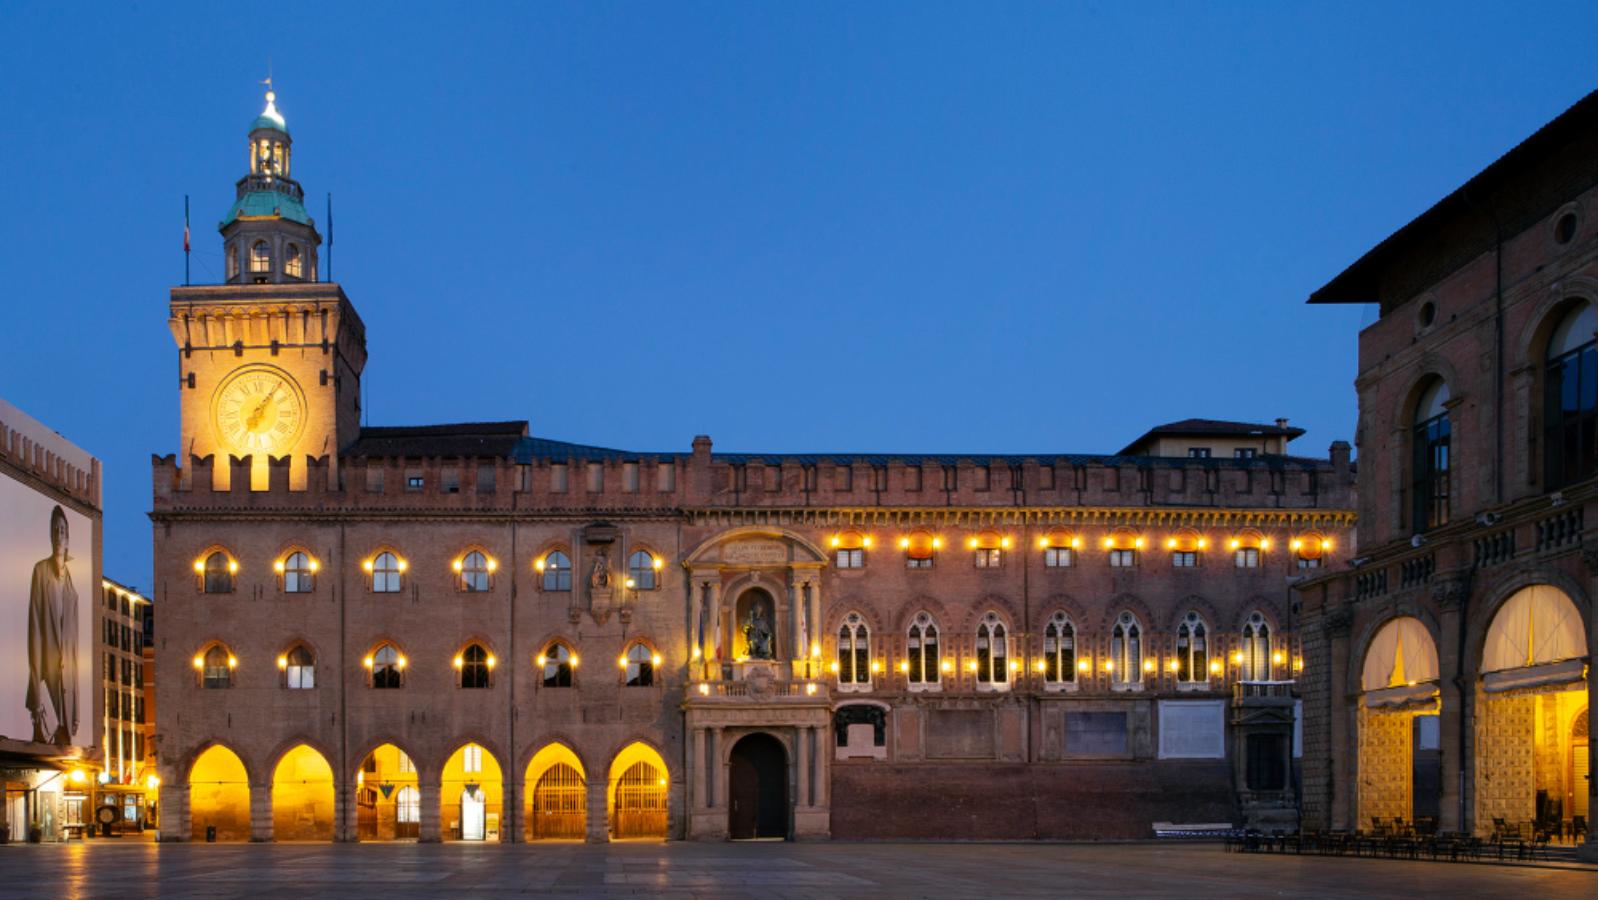 Torre dell'orologio di sera, Bologna / Clock tower by night, Bologna